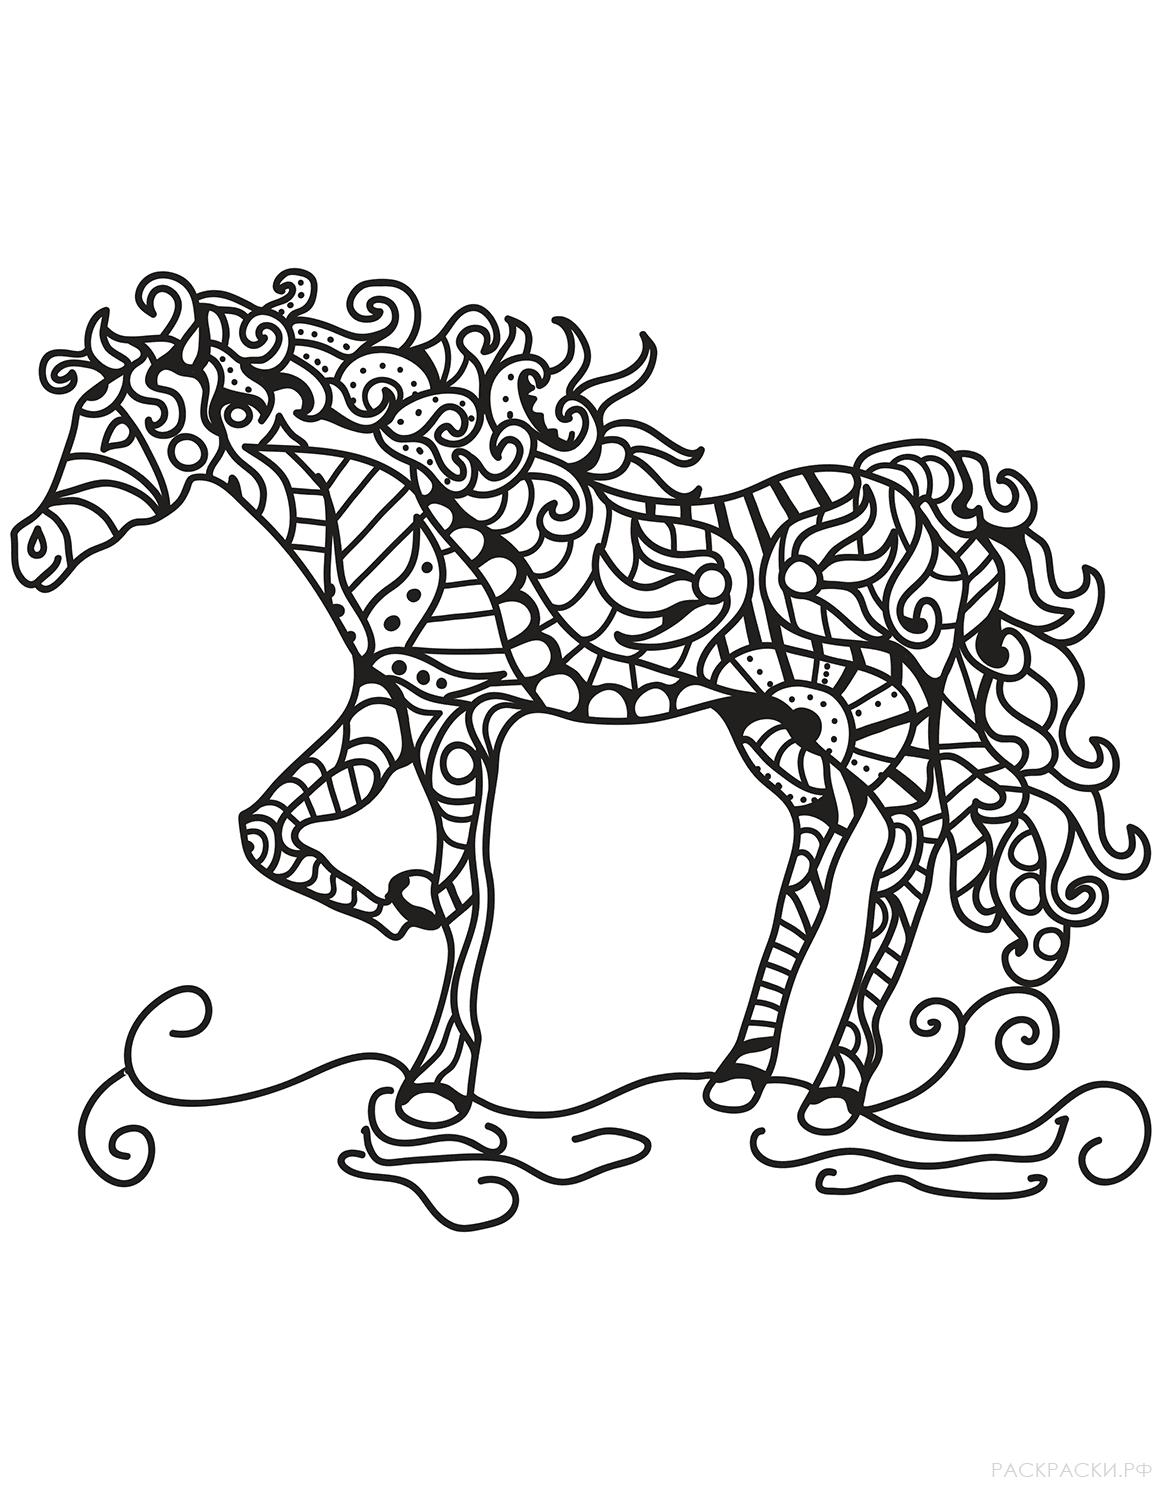 Раскраска Лошадь в технике дзентангл 9